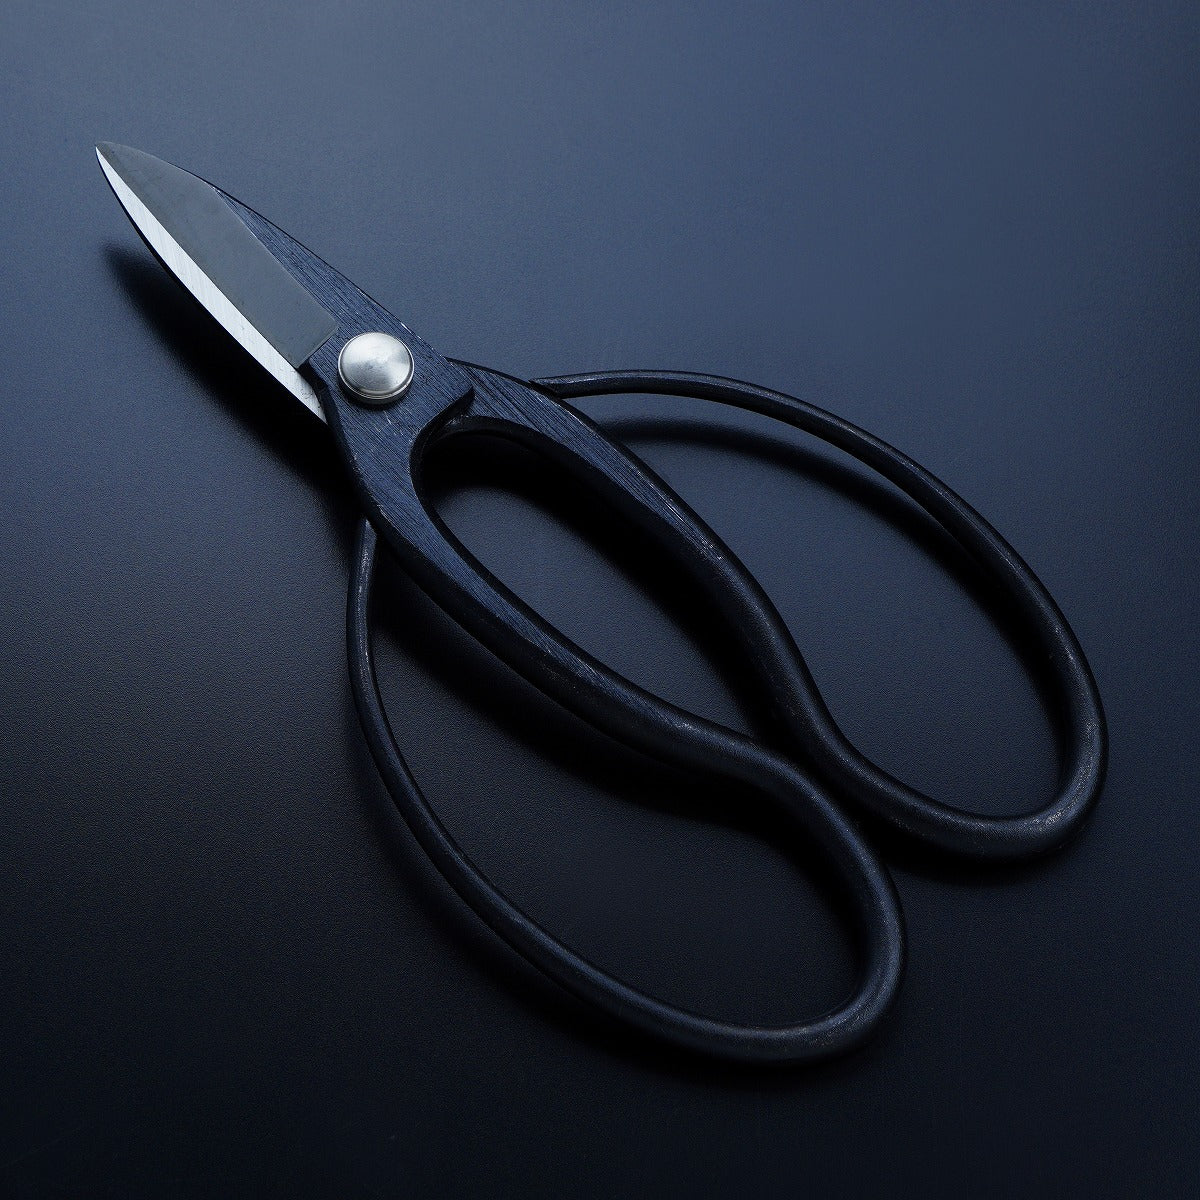 HONMAMON "SHIGEKATSU" Garden Shears for Left Hander 180mm(abt 7.1 Inch) Okubo Scissors